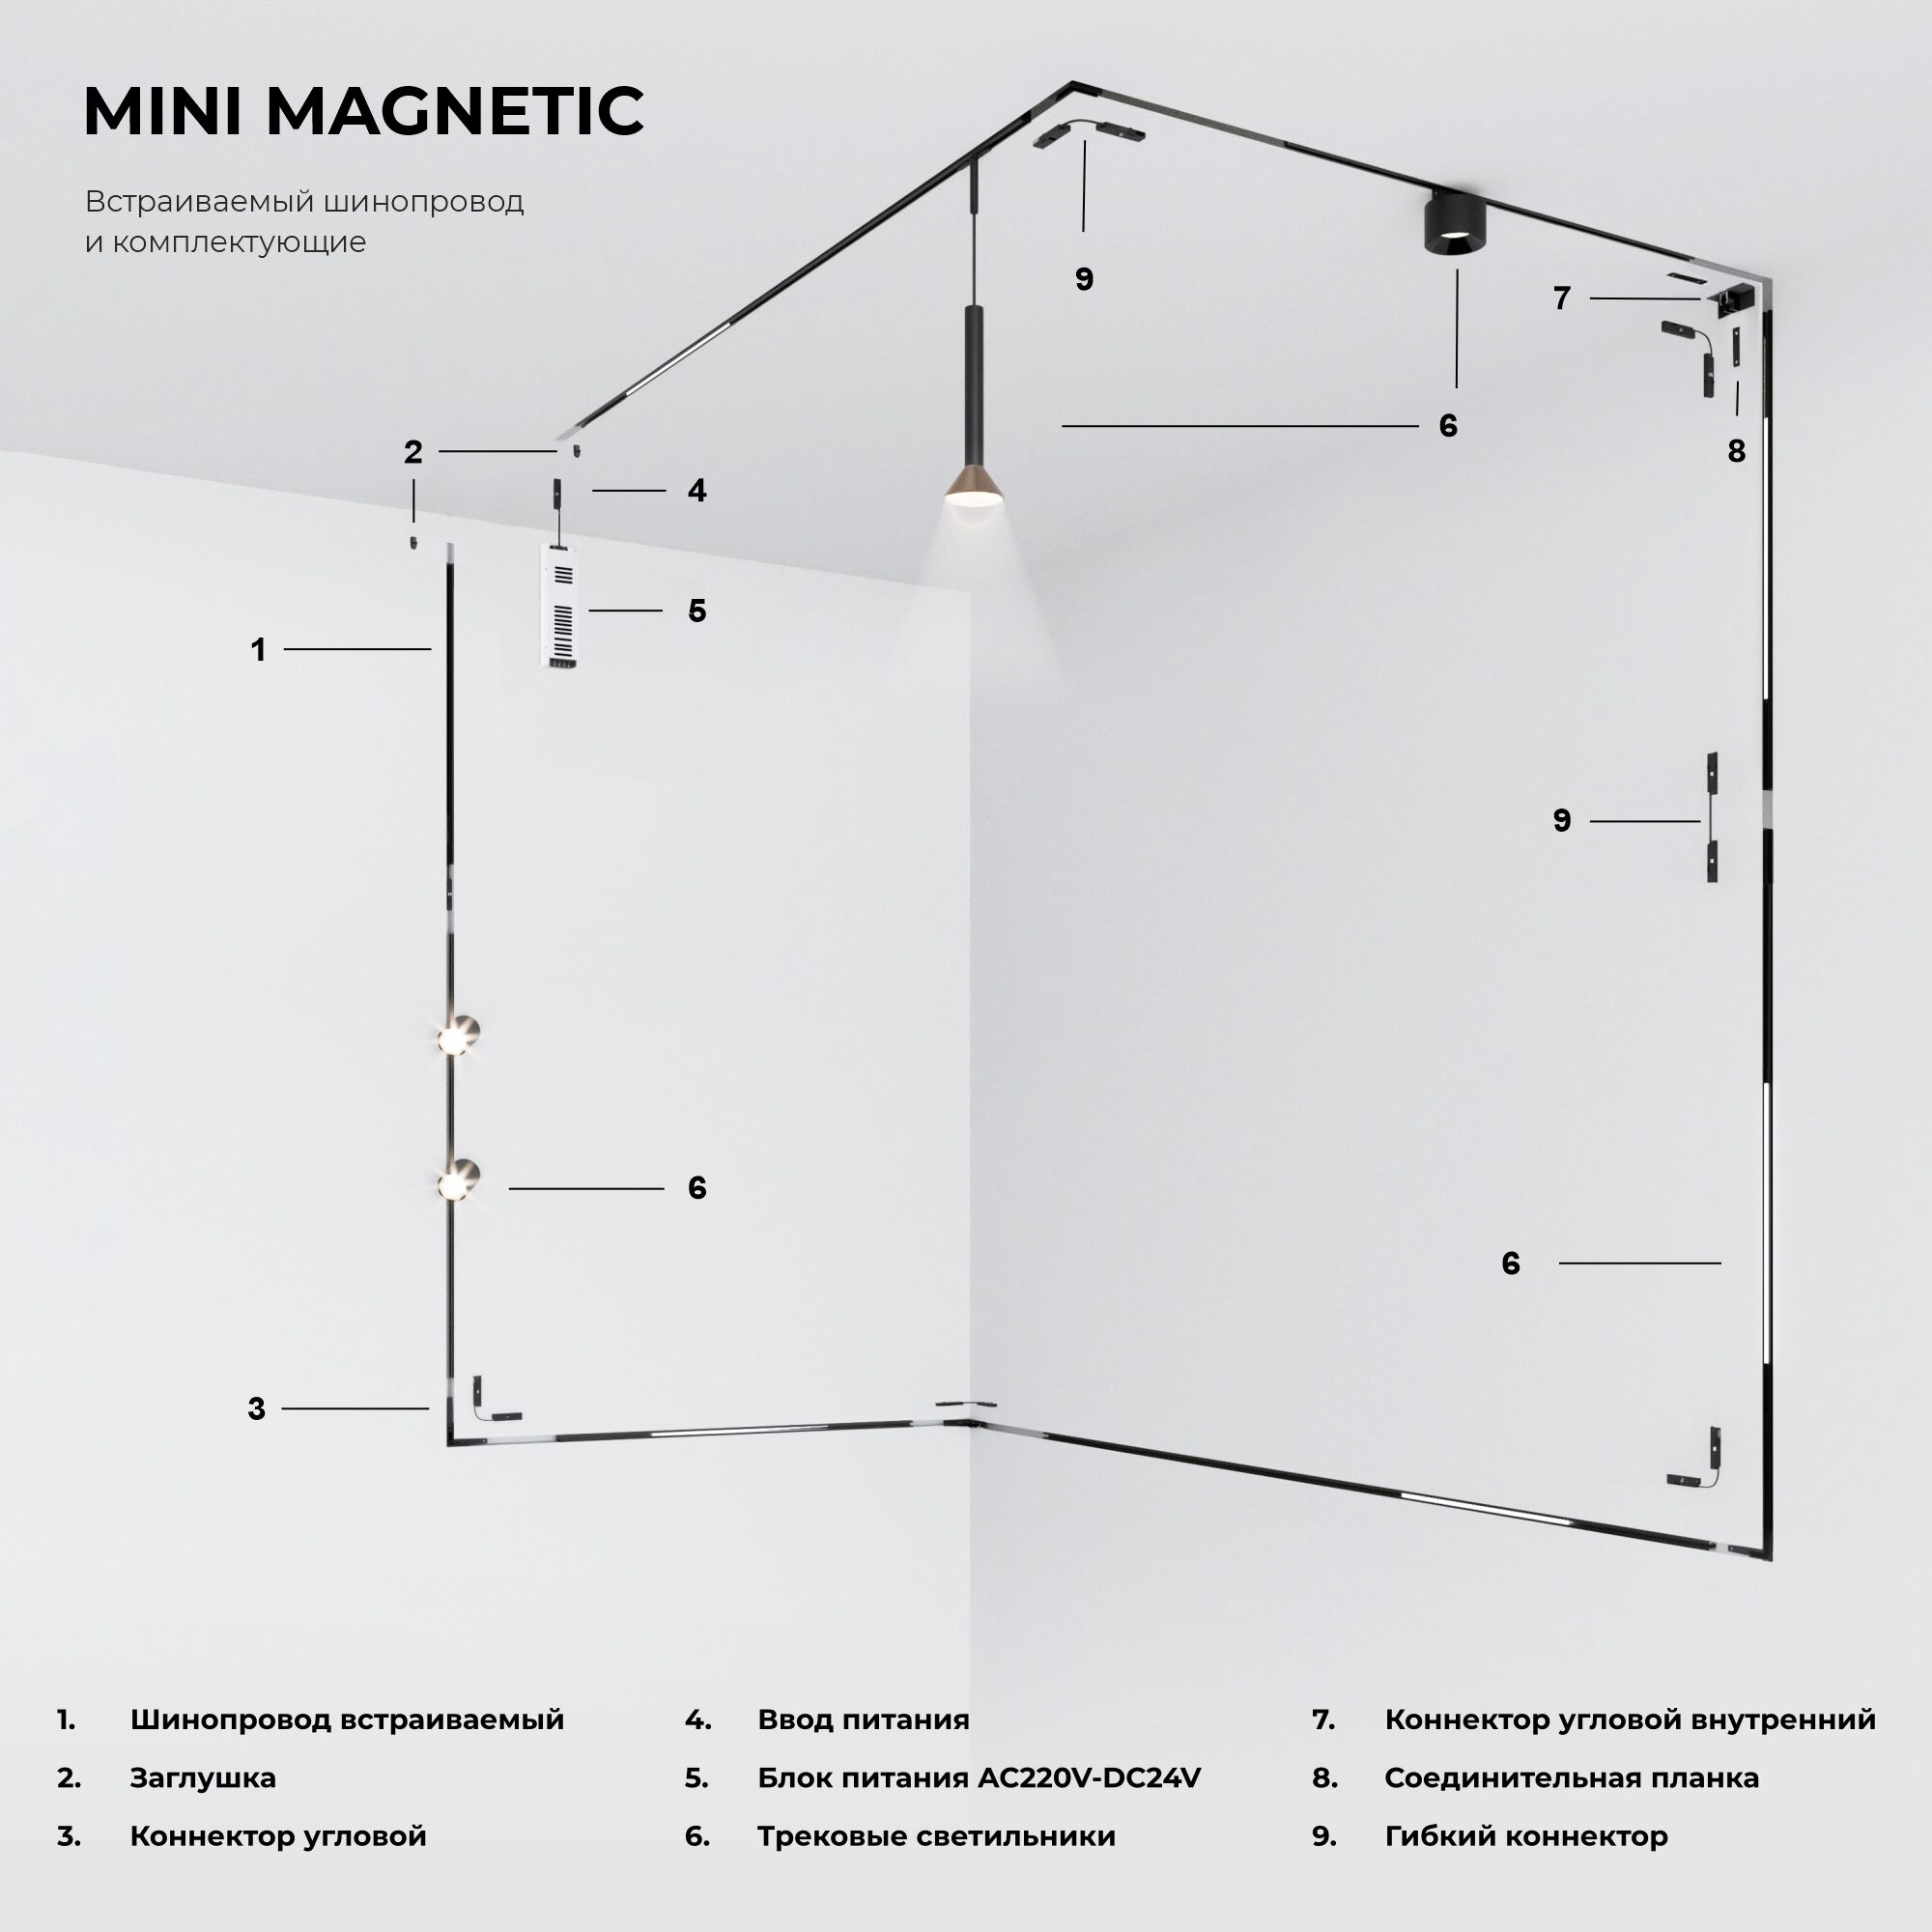 Mini Magnetic Шинопровод встраиваемый (черный) 2 м 85170/00